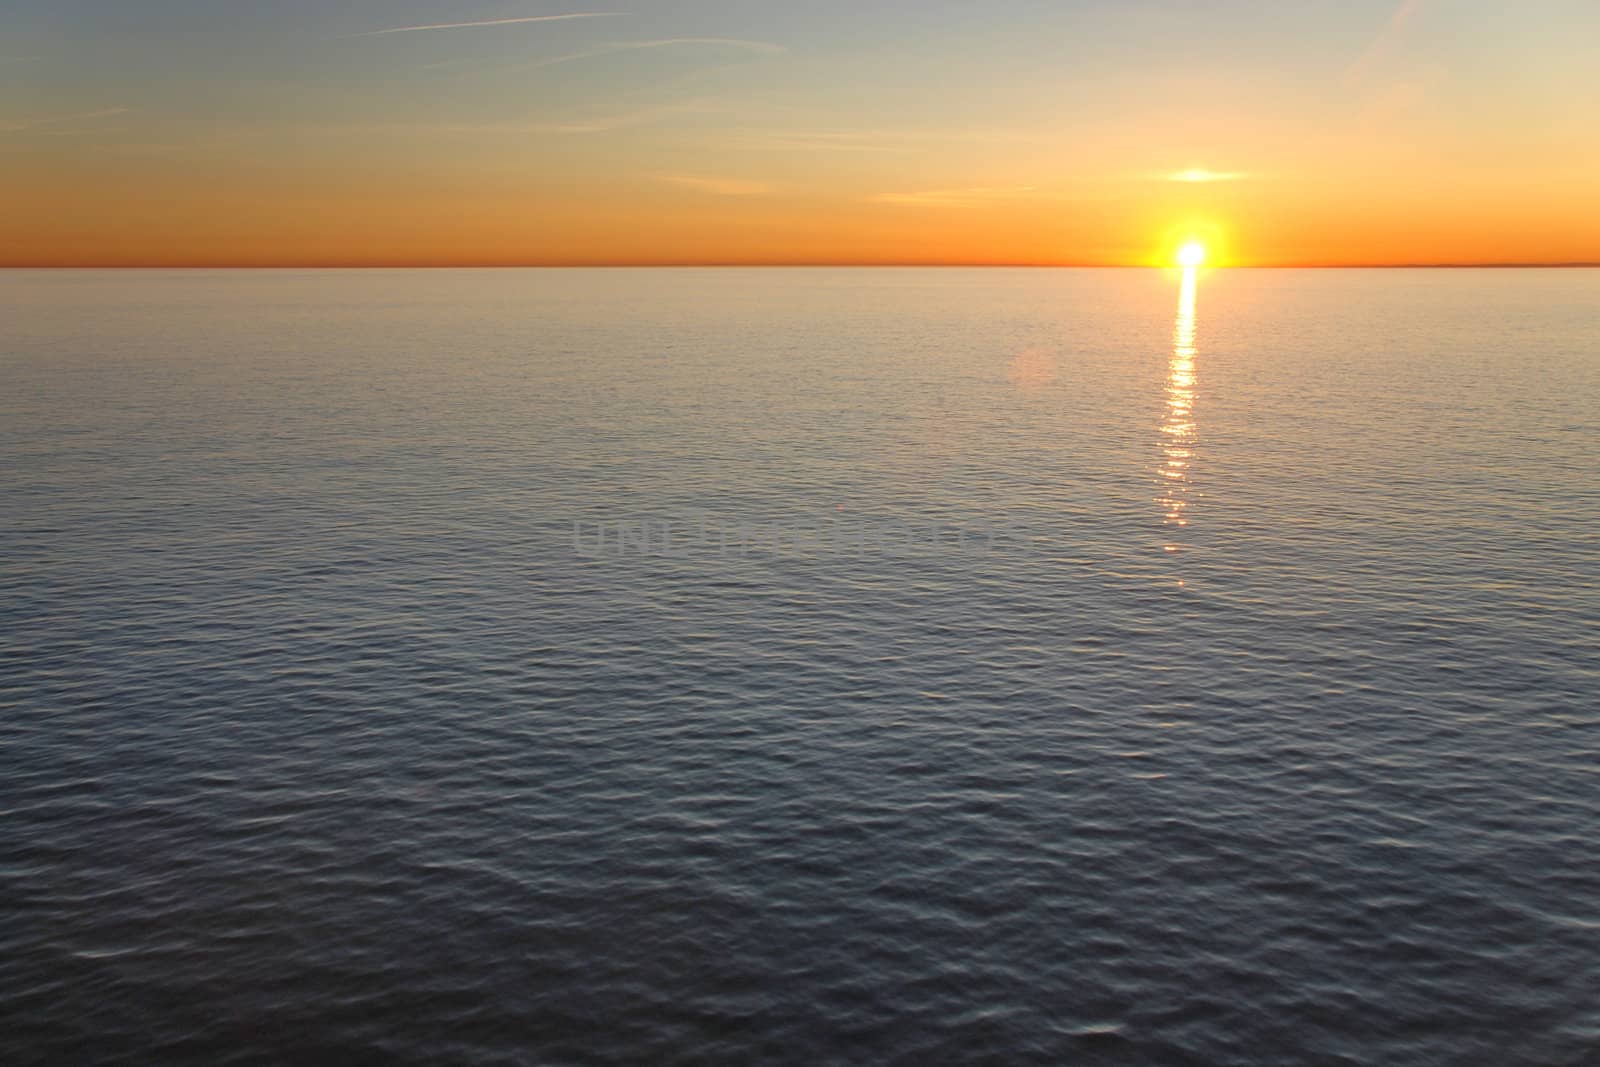 Ocean sunset by Gjermund